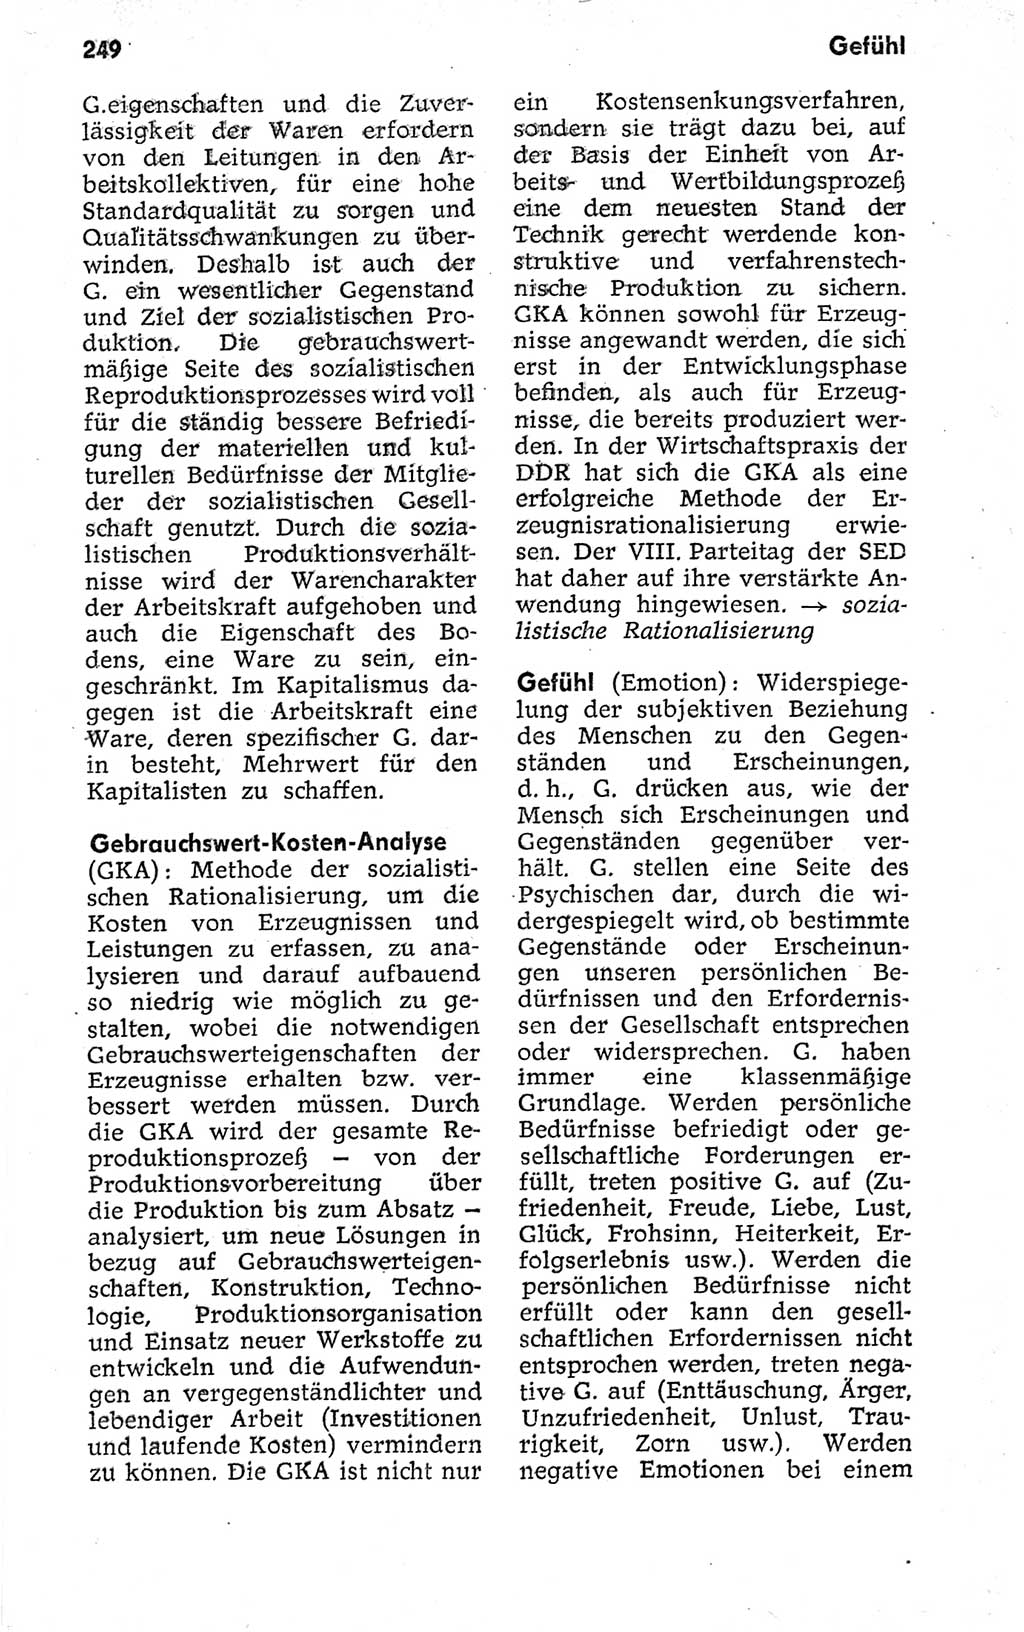 Kleines politisches Wörterbuch [Deutsche Demokratische Republik (DDR)] 1973, Seite 249 (Kl. pol. Wb. DDR 1973, S. 249)